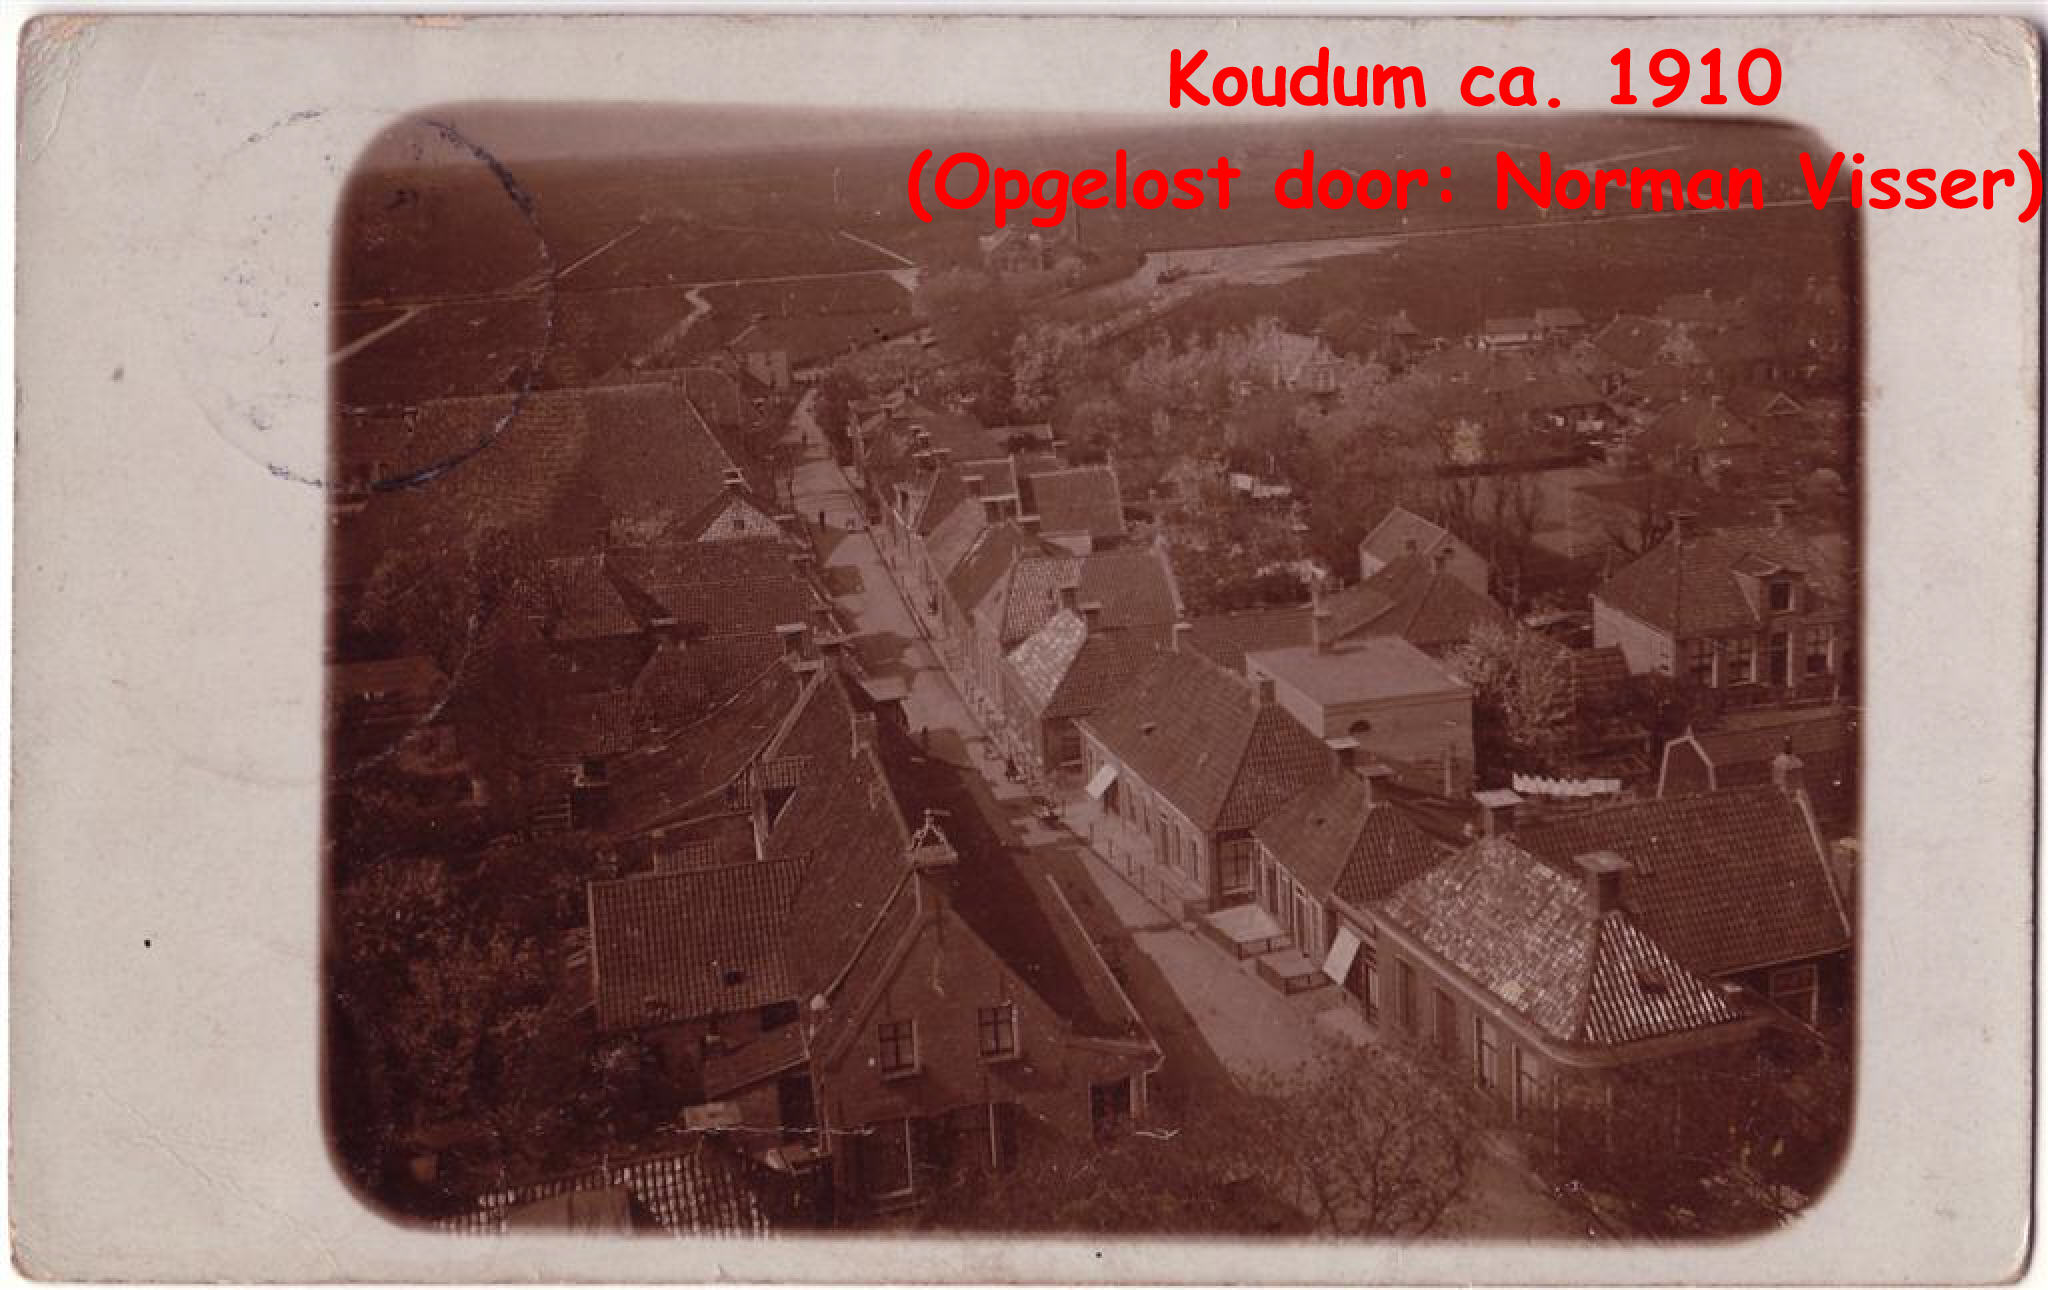 Koudum (Door: Norman Visser)